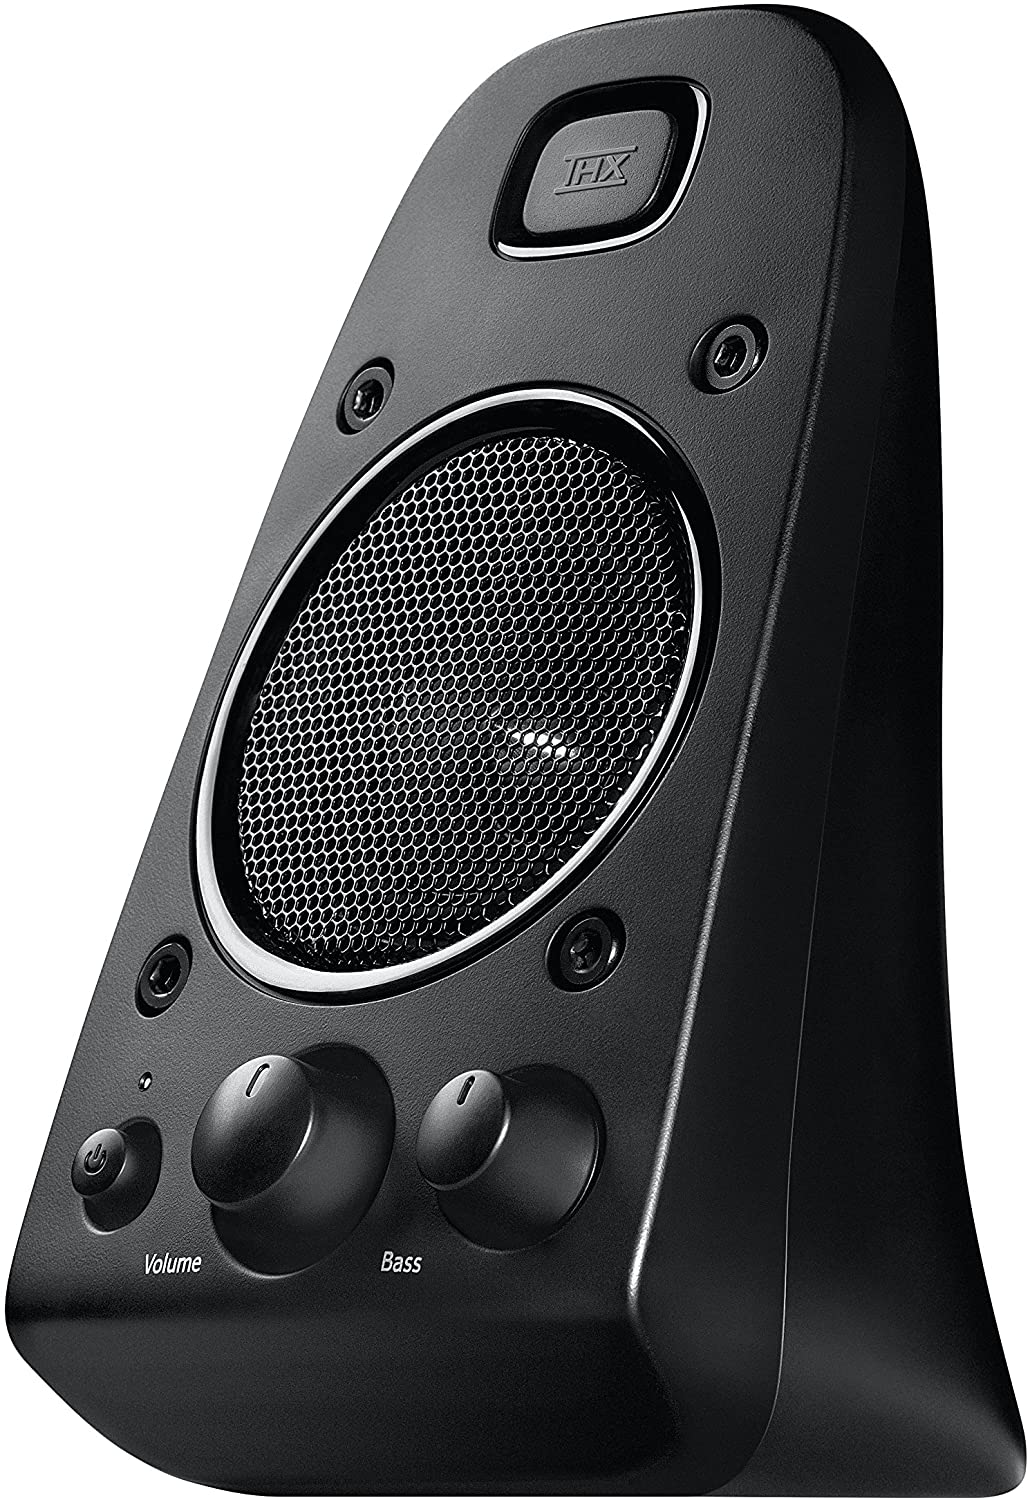 Logitech Z623 2.1 Speaker System with Subwoofer